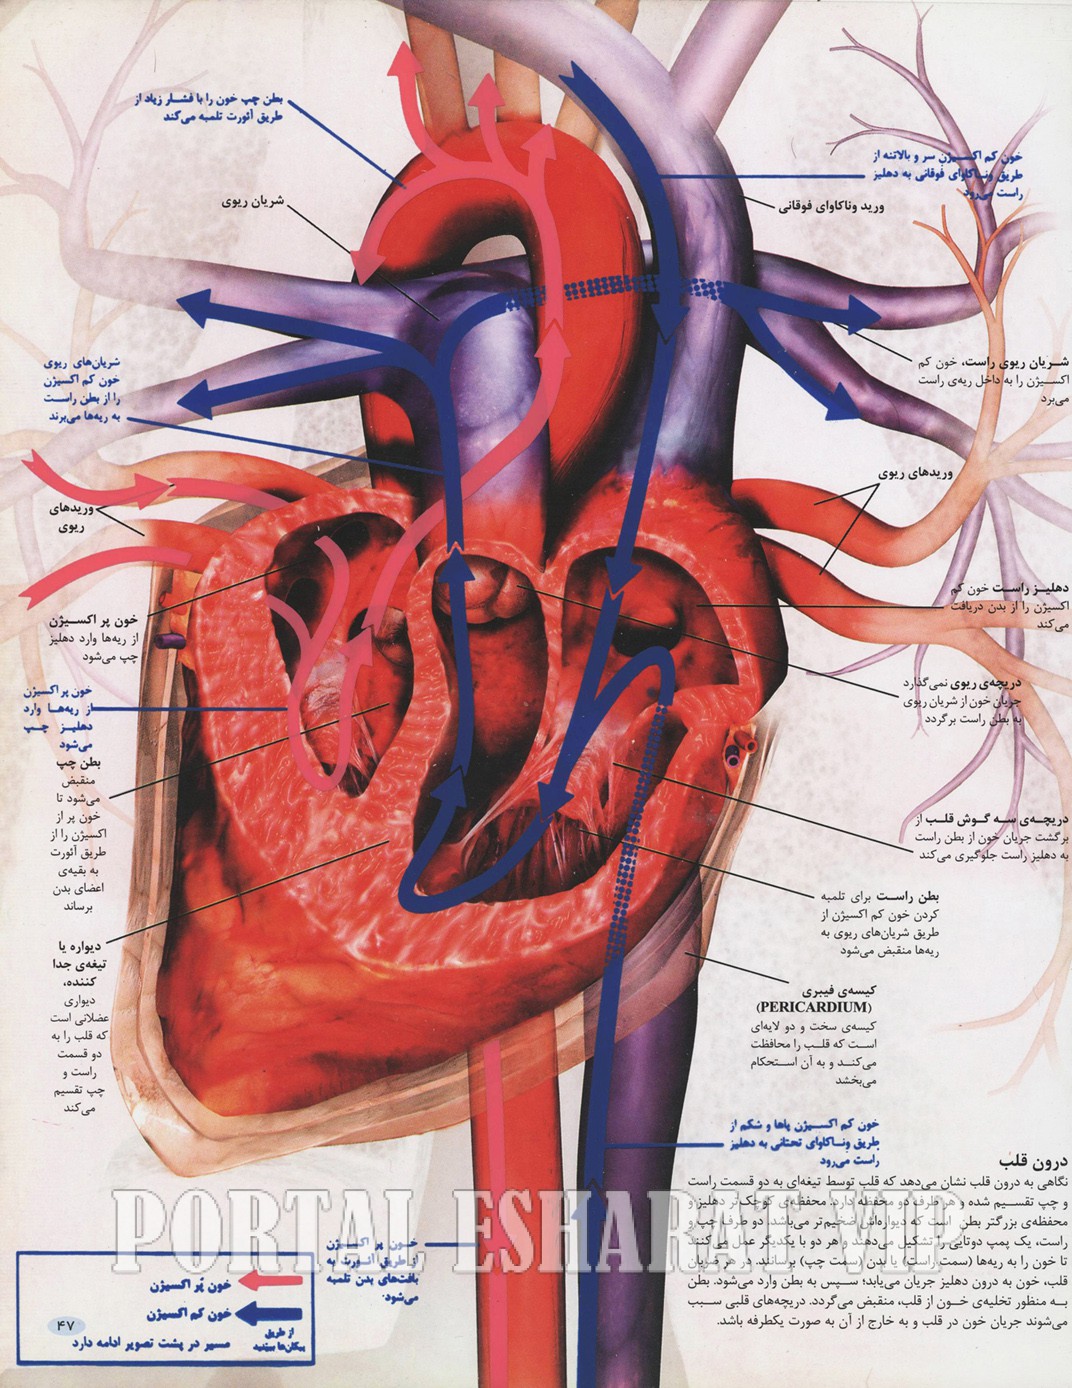 مکانیک سیستم قلب و عروق بدن